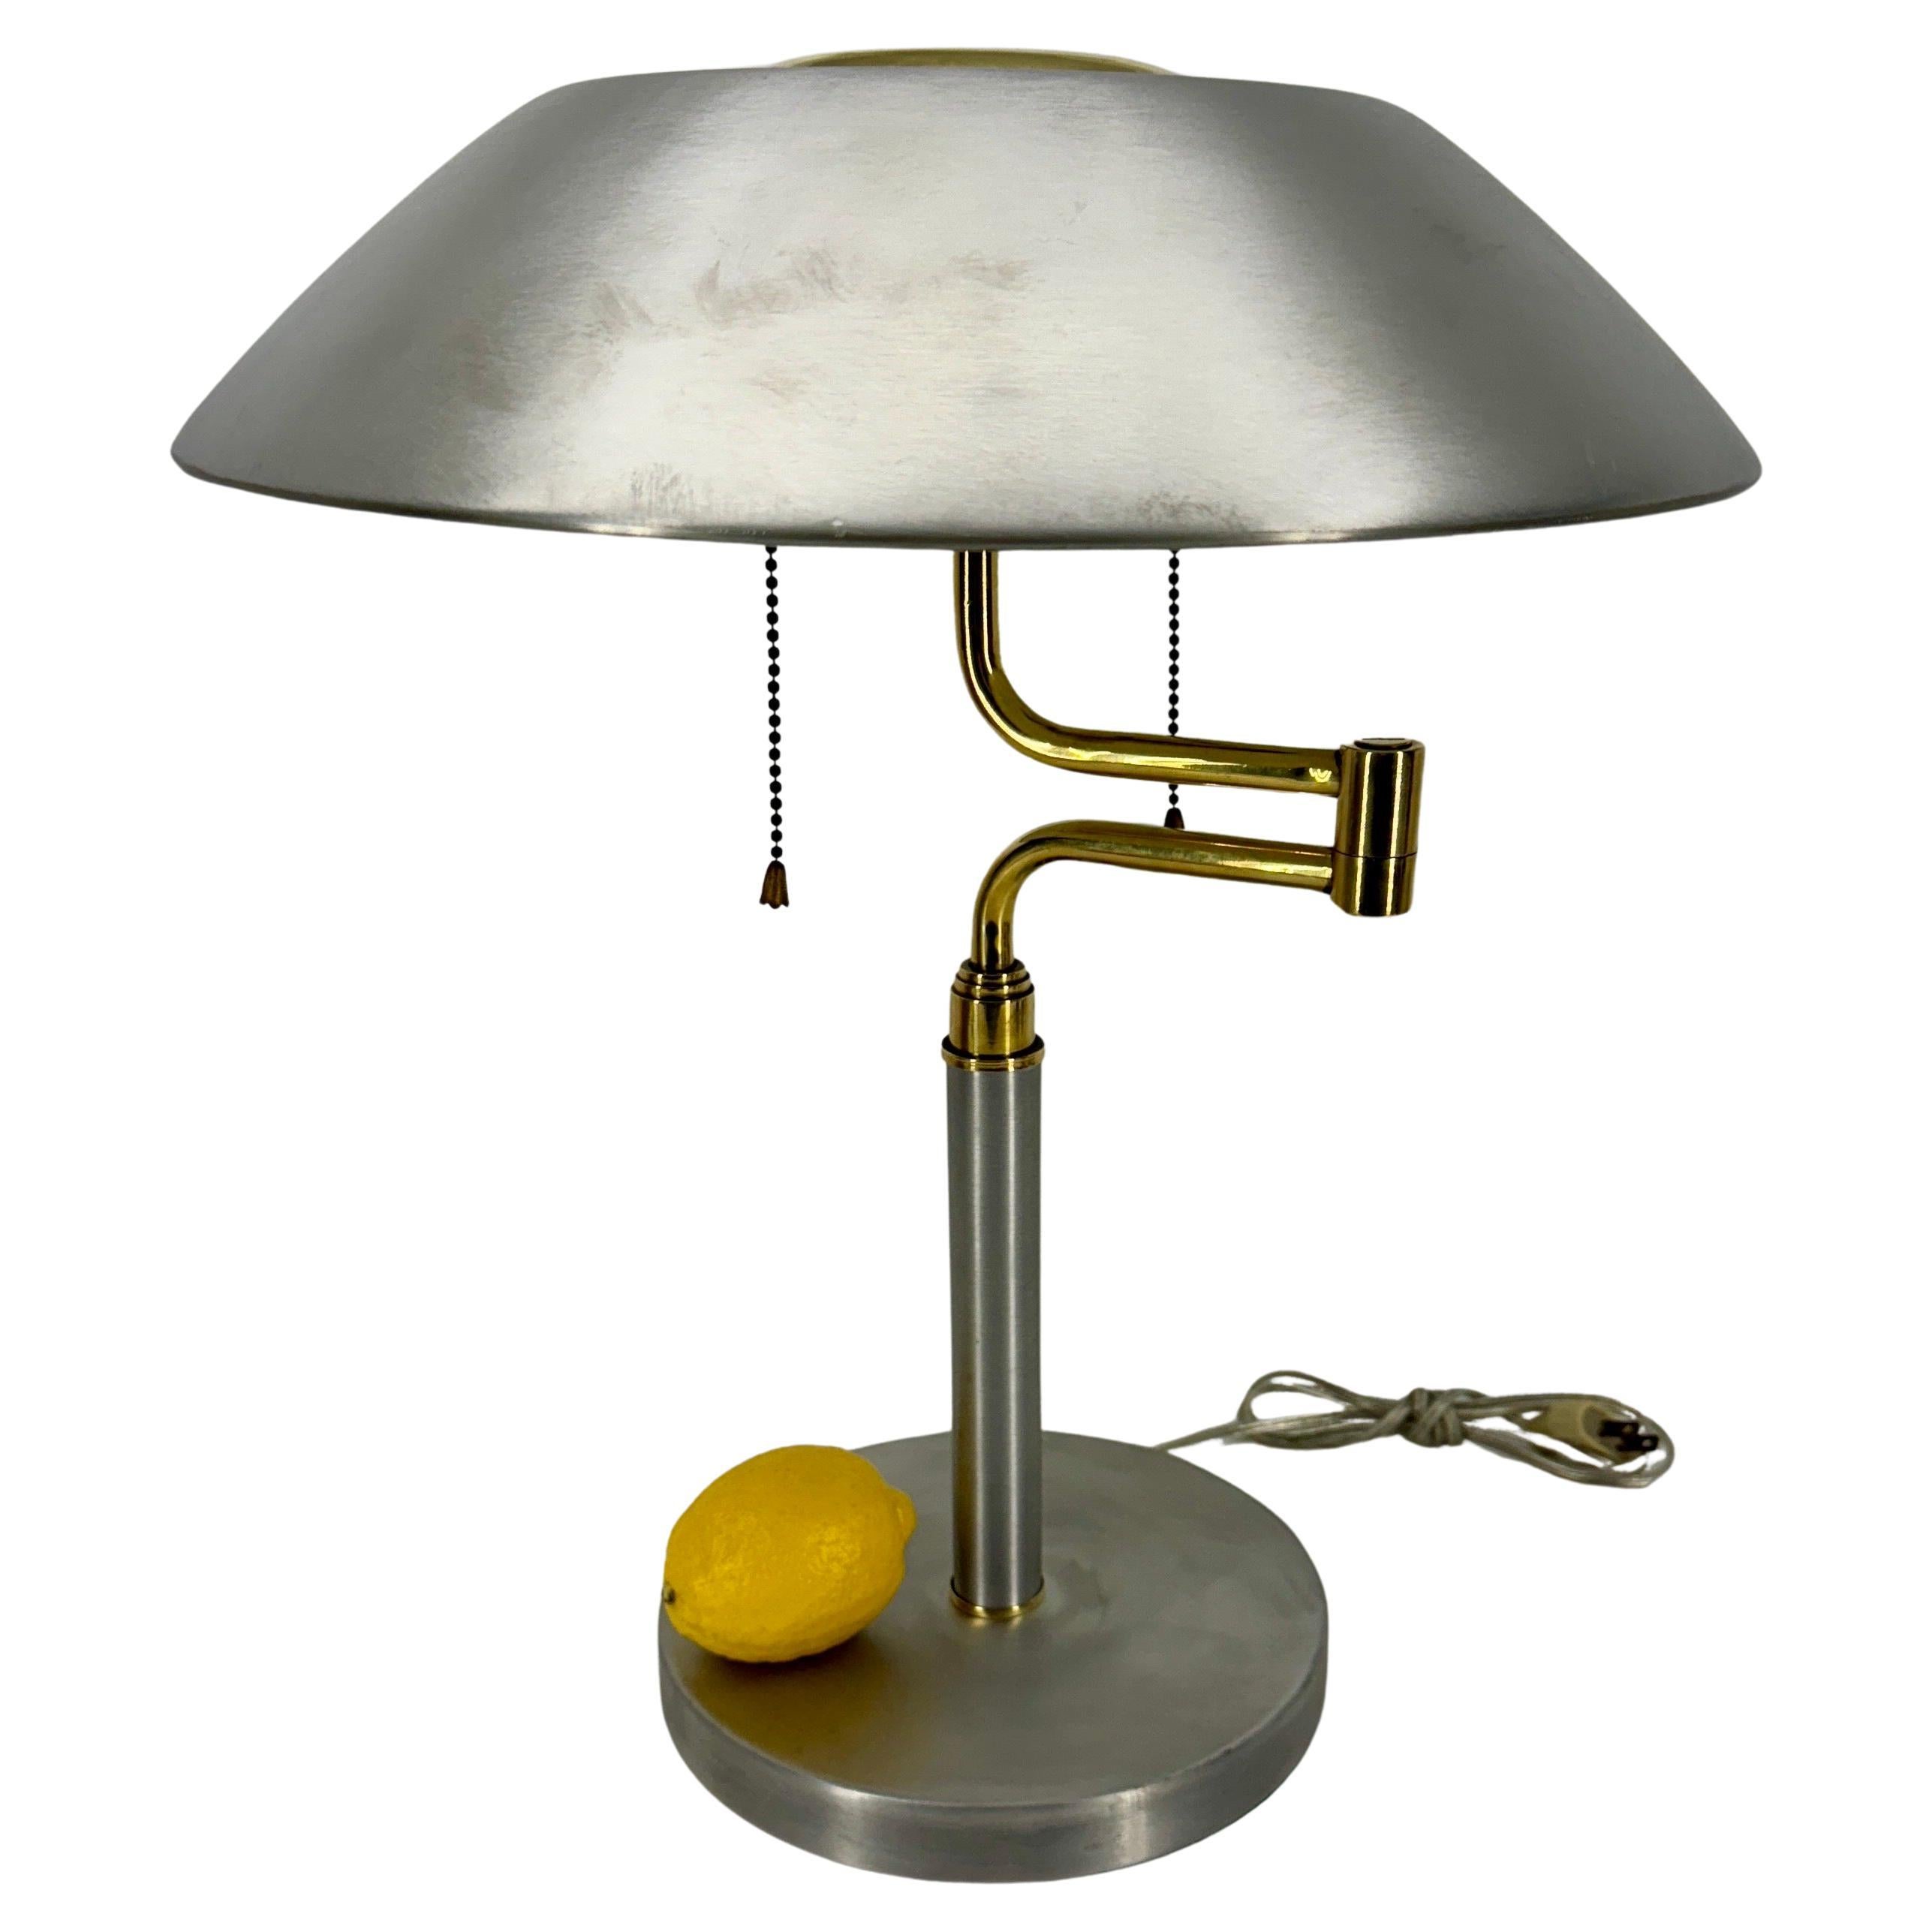 Lampe de bureau vintage en aluminium brossé et en laiton, Mid-Century Modern.
Le bras et l'abat-jour de la lampe pivotent pour atteindre une largeur maximale de 20,75 pouces.